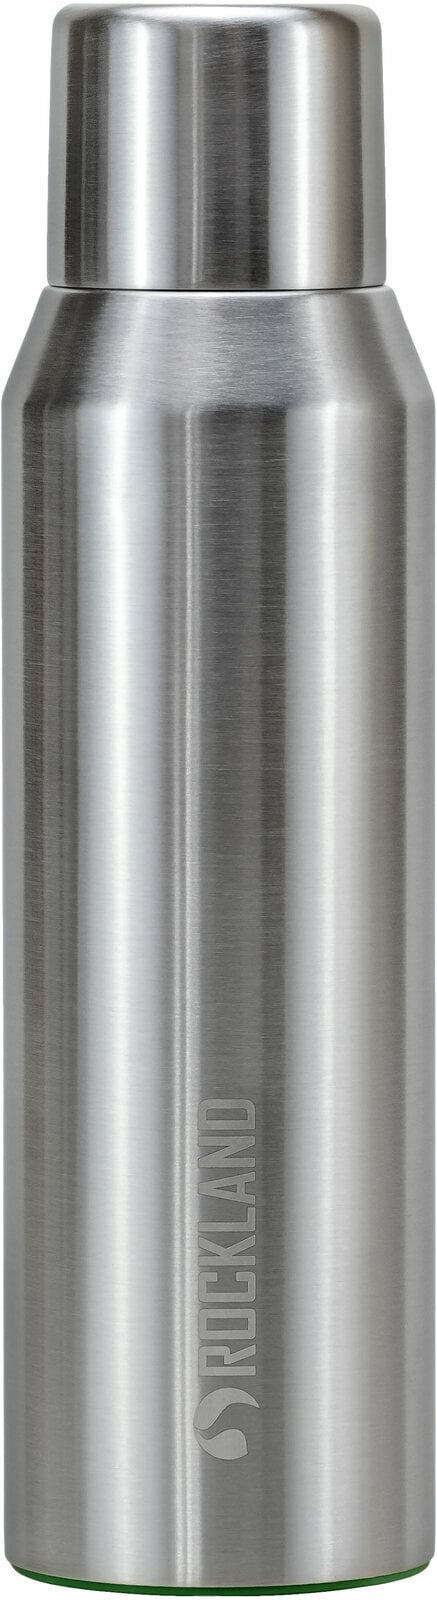 Termos Rockland Galaxy Vacuum Flask 1 L Silver Termos